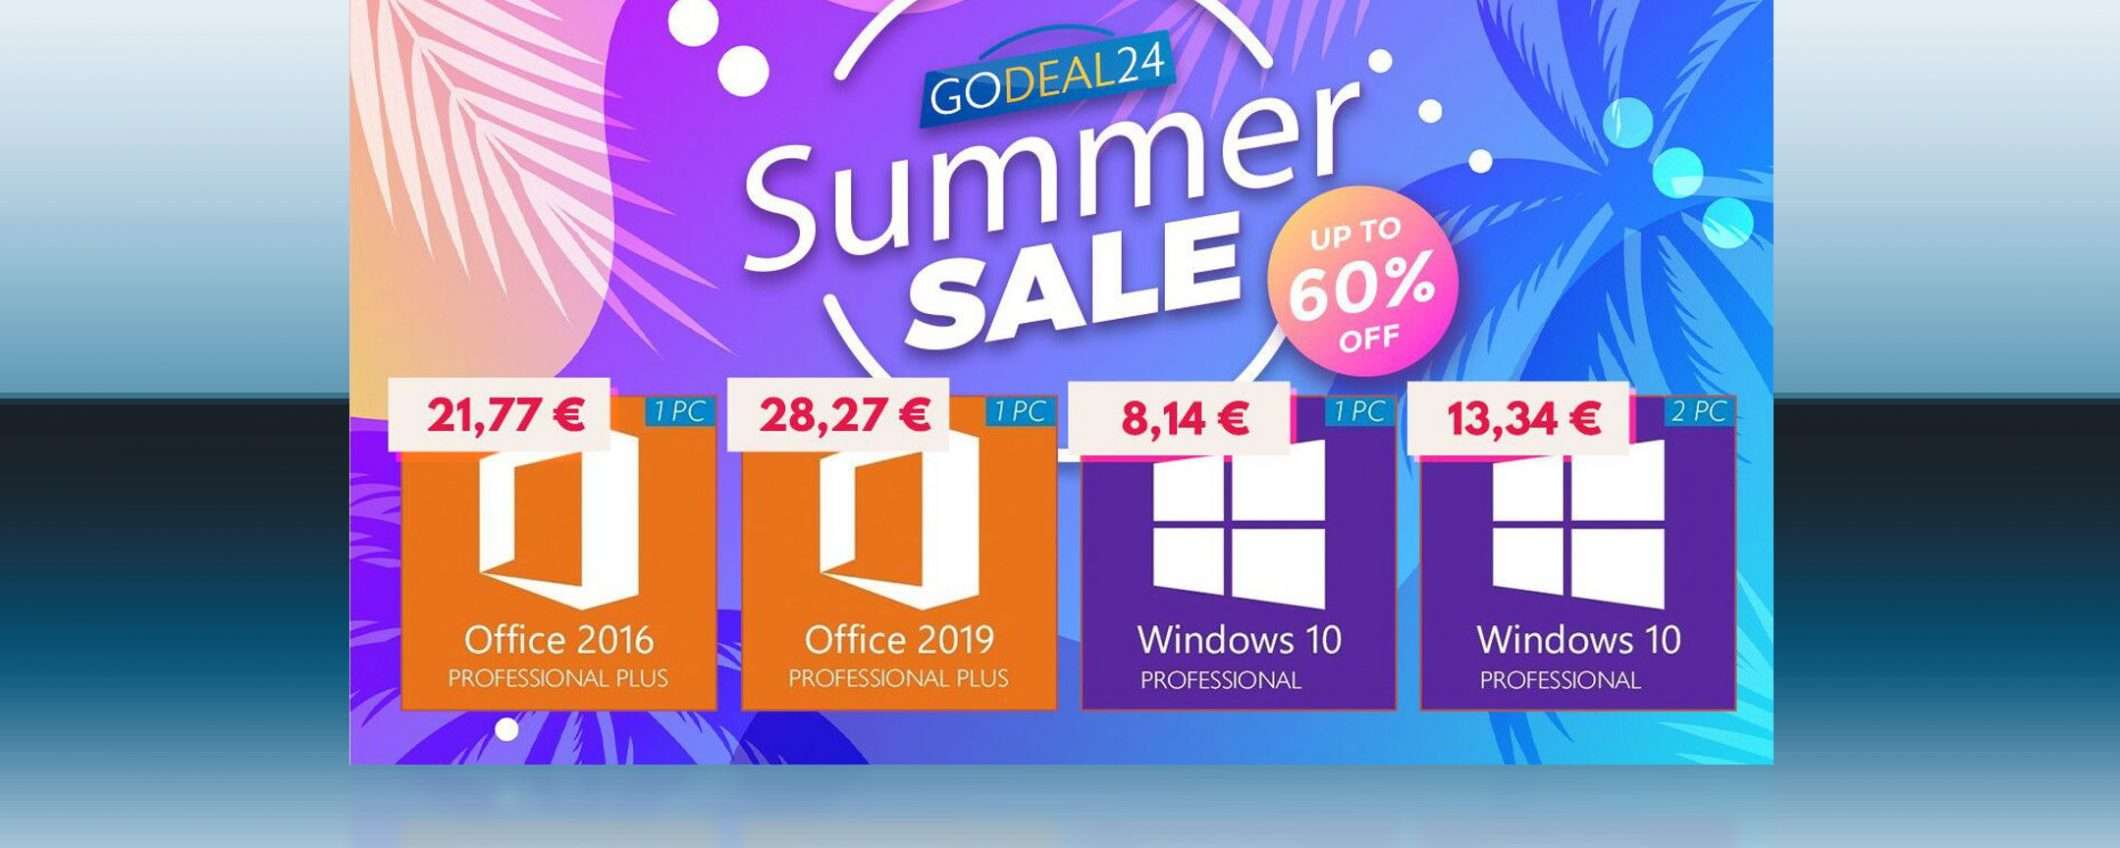 Saldi di maggio: Windows 10 a 6€, Office solo 15€